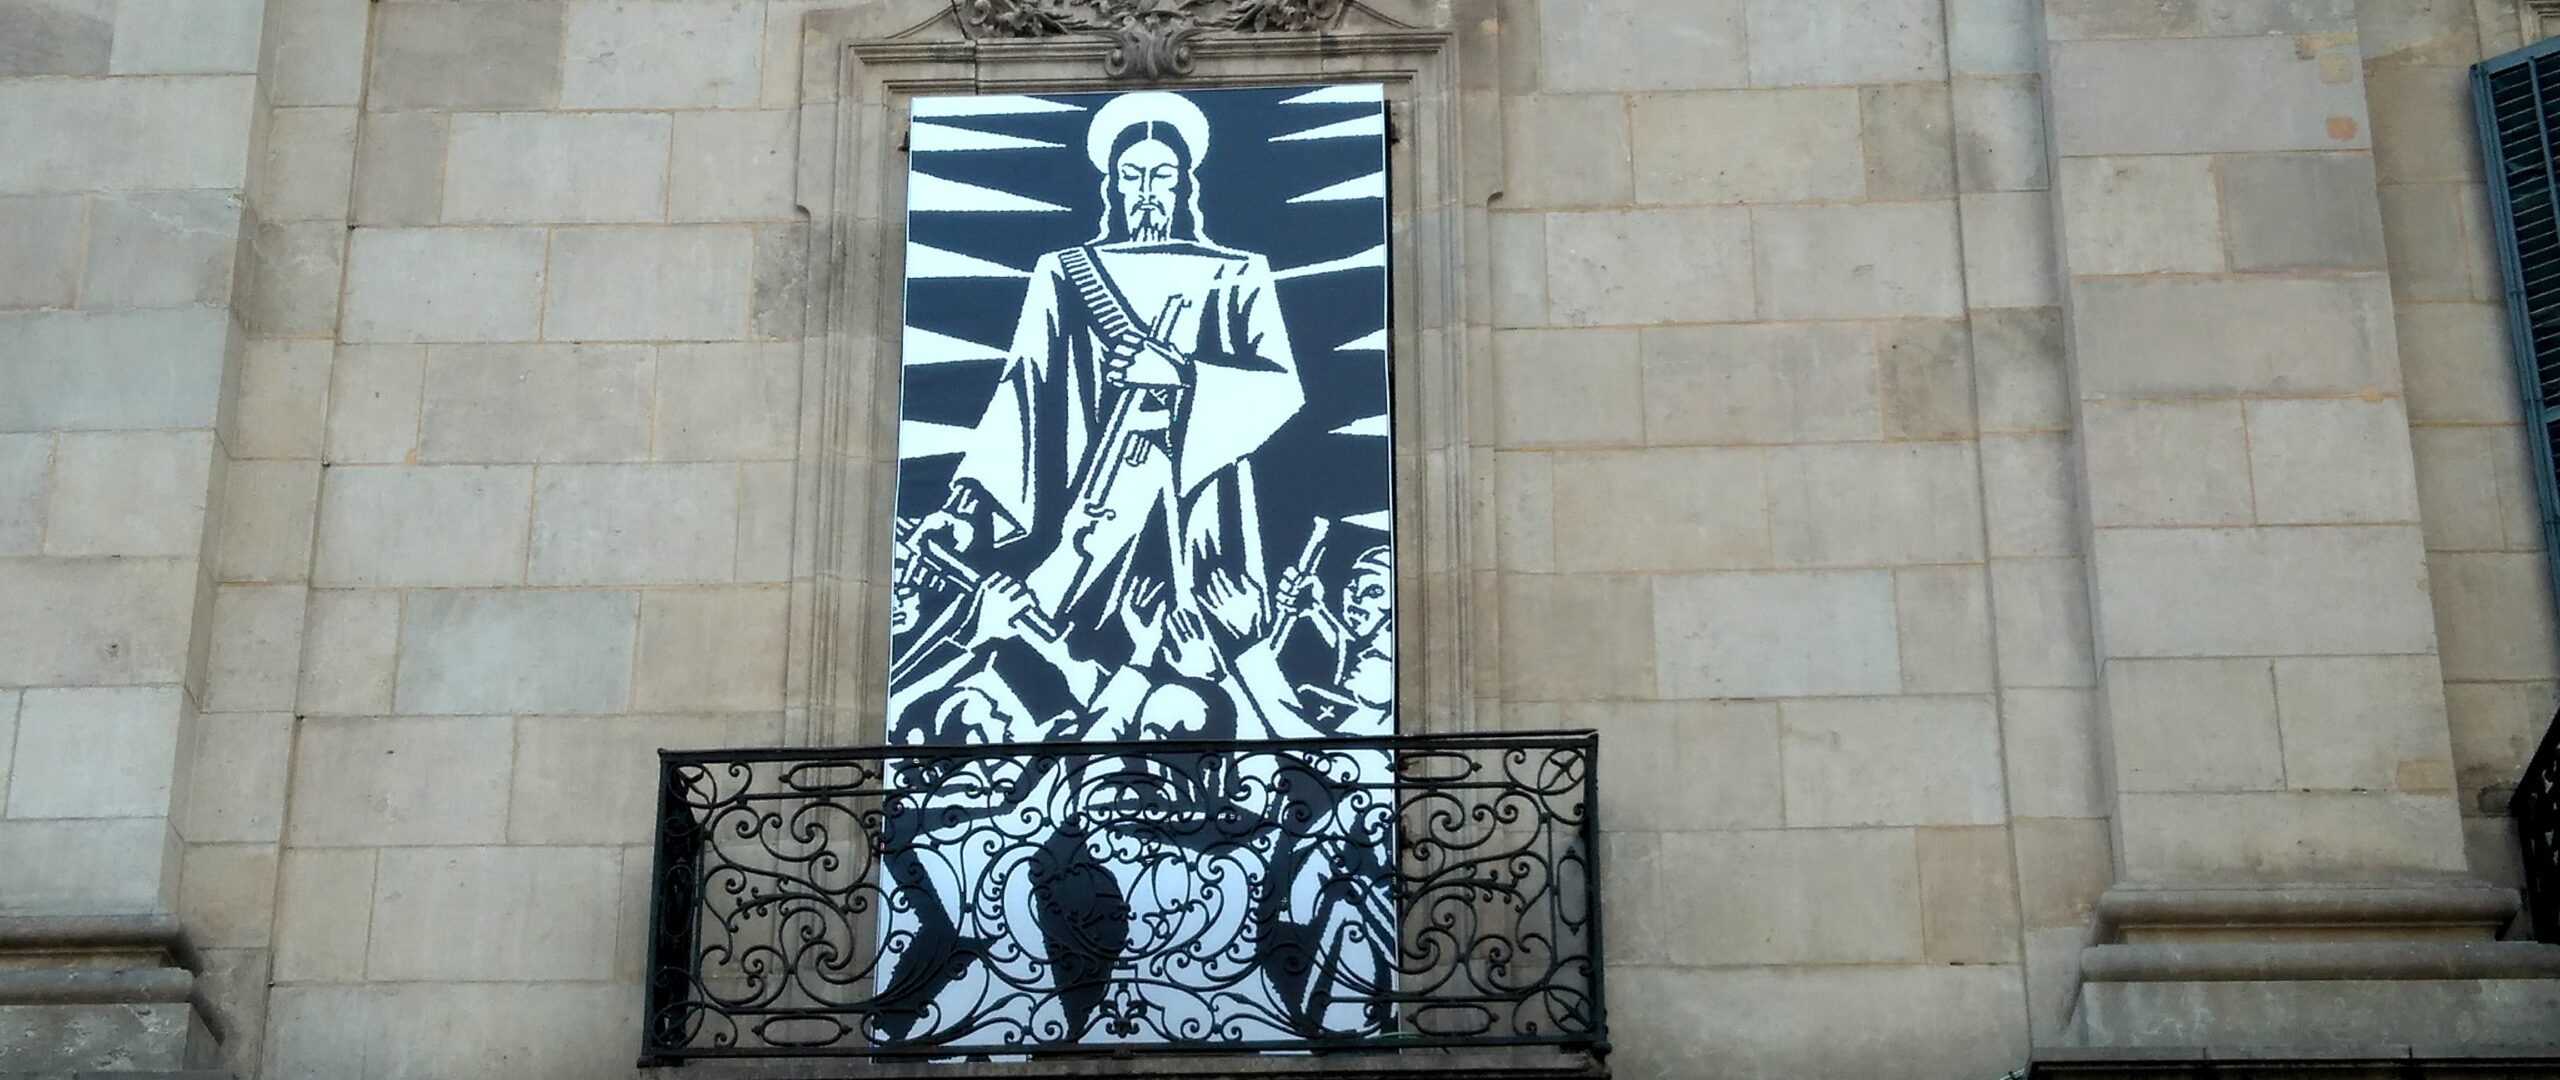 El 'Crist repartint armes als reaccionaris' d'Helios Gómez, crida de l'expo de l'artista a la façana de la Virreina de Barcelona (fotografia: M.I.).